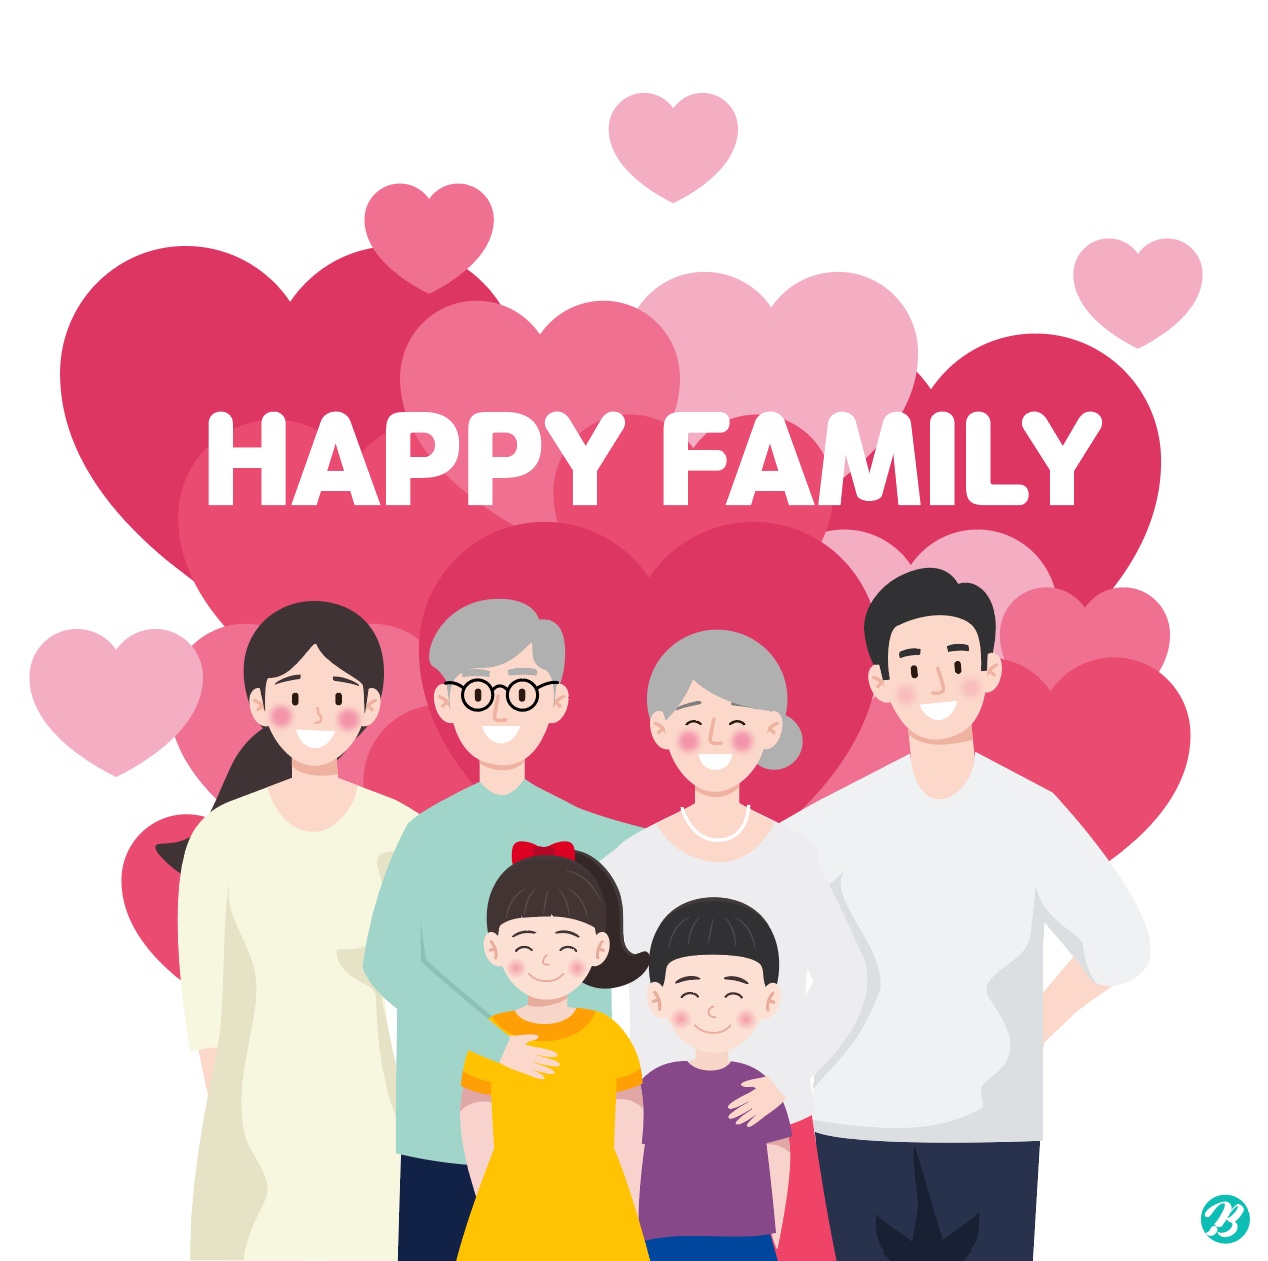 가족 사랑 일러스트 Ai 다운로드 Download Family Love Image Vector - Urbanbrush